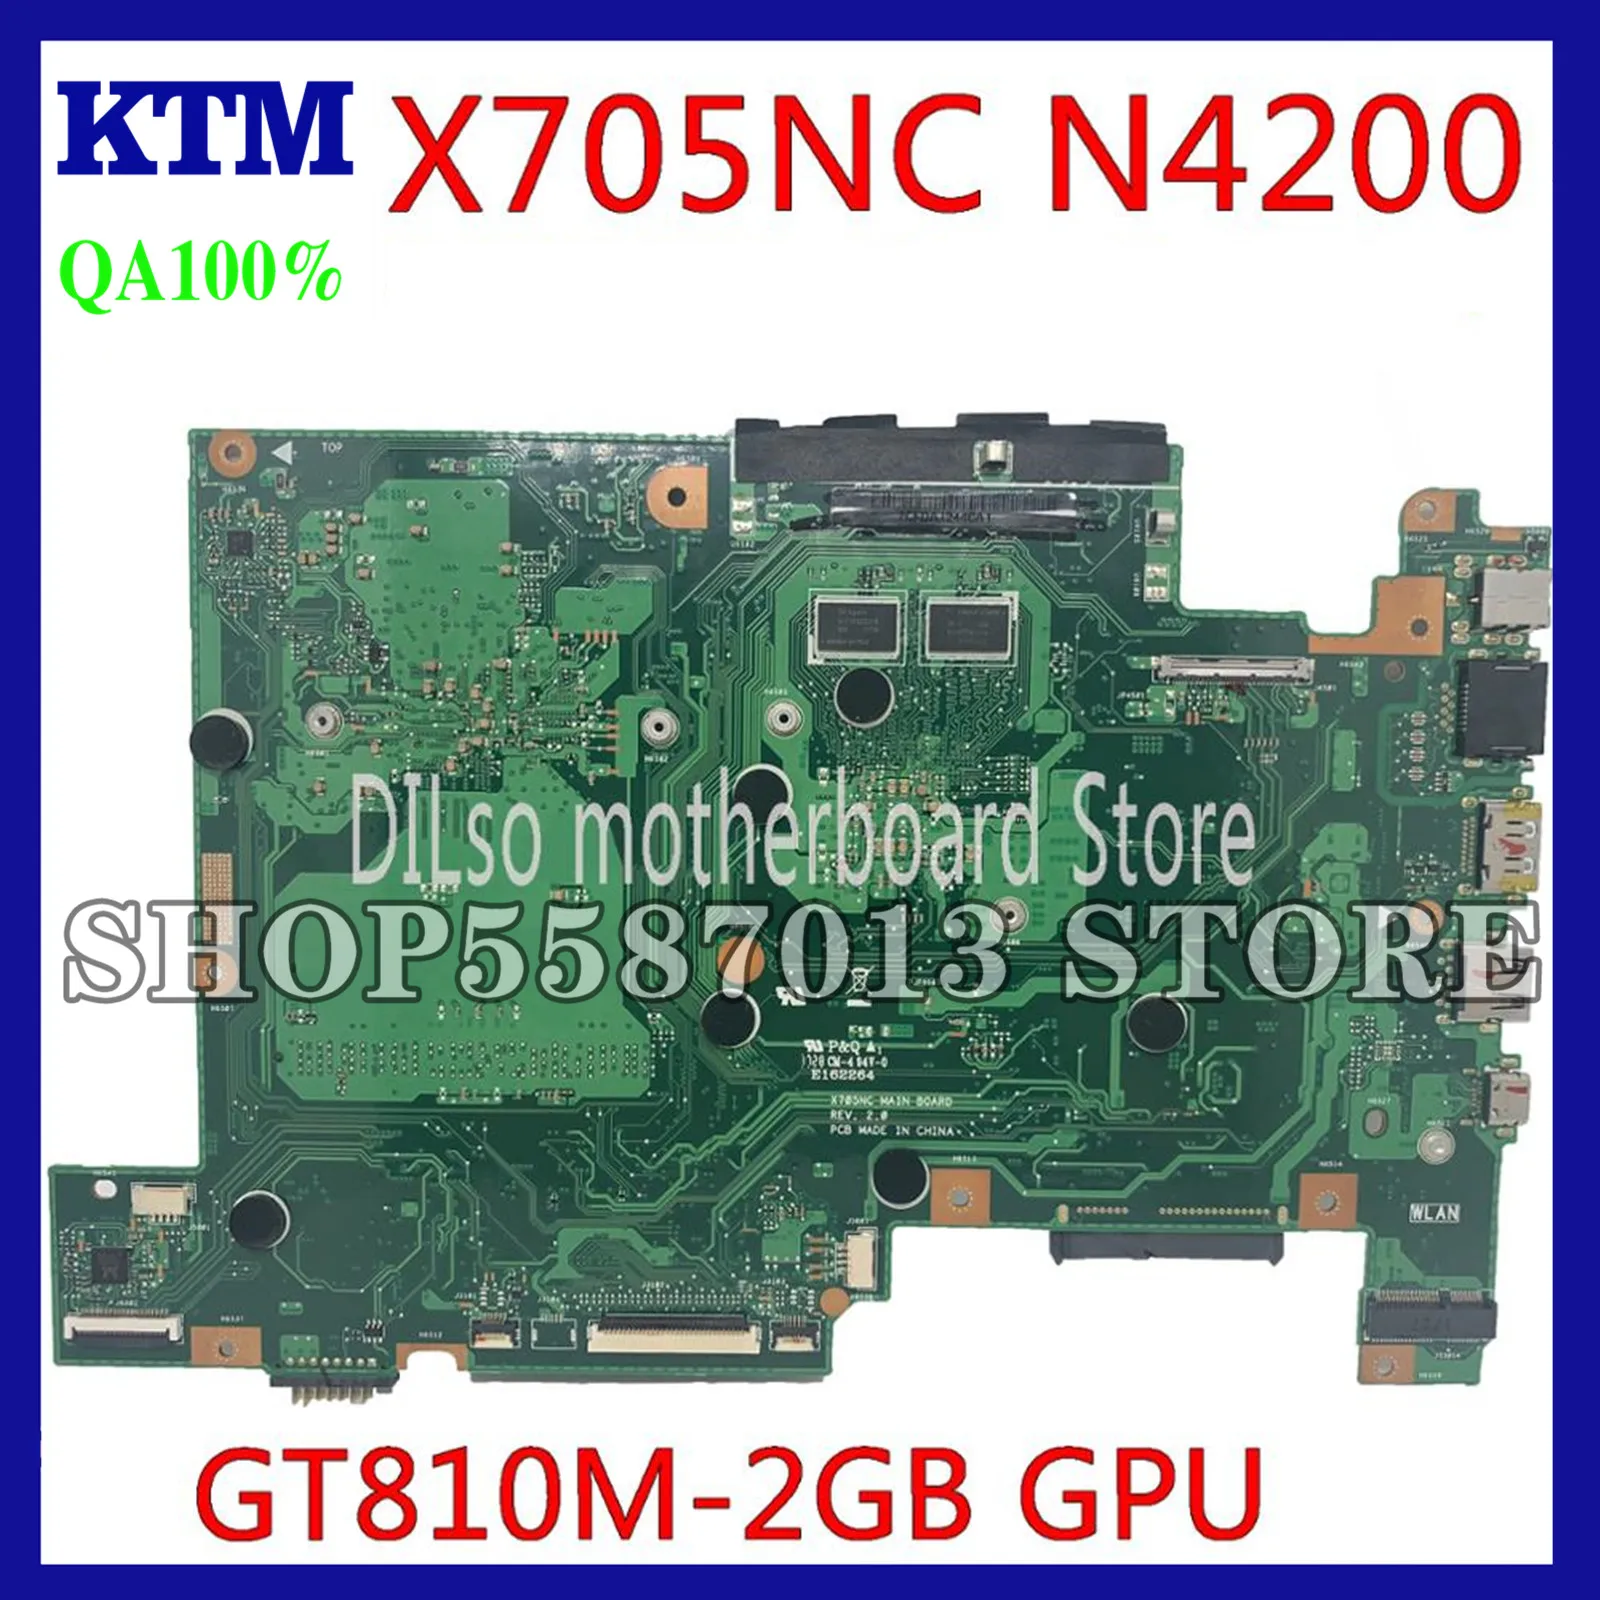 

KEFU X705NC Laptop Motherboard For ASUS Vivobook X705NC X705N Motherboard original Mainboard N4200 CPU GT810M-2GB GPU work 100%